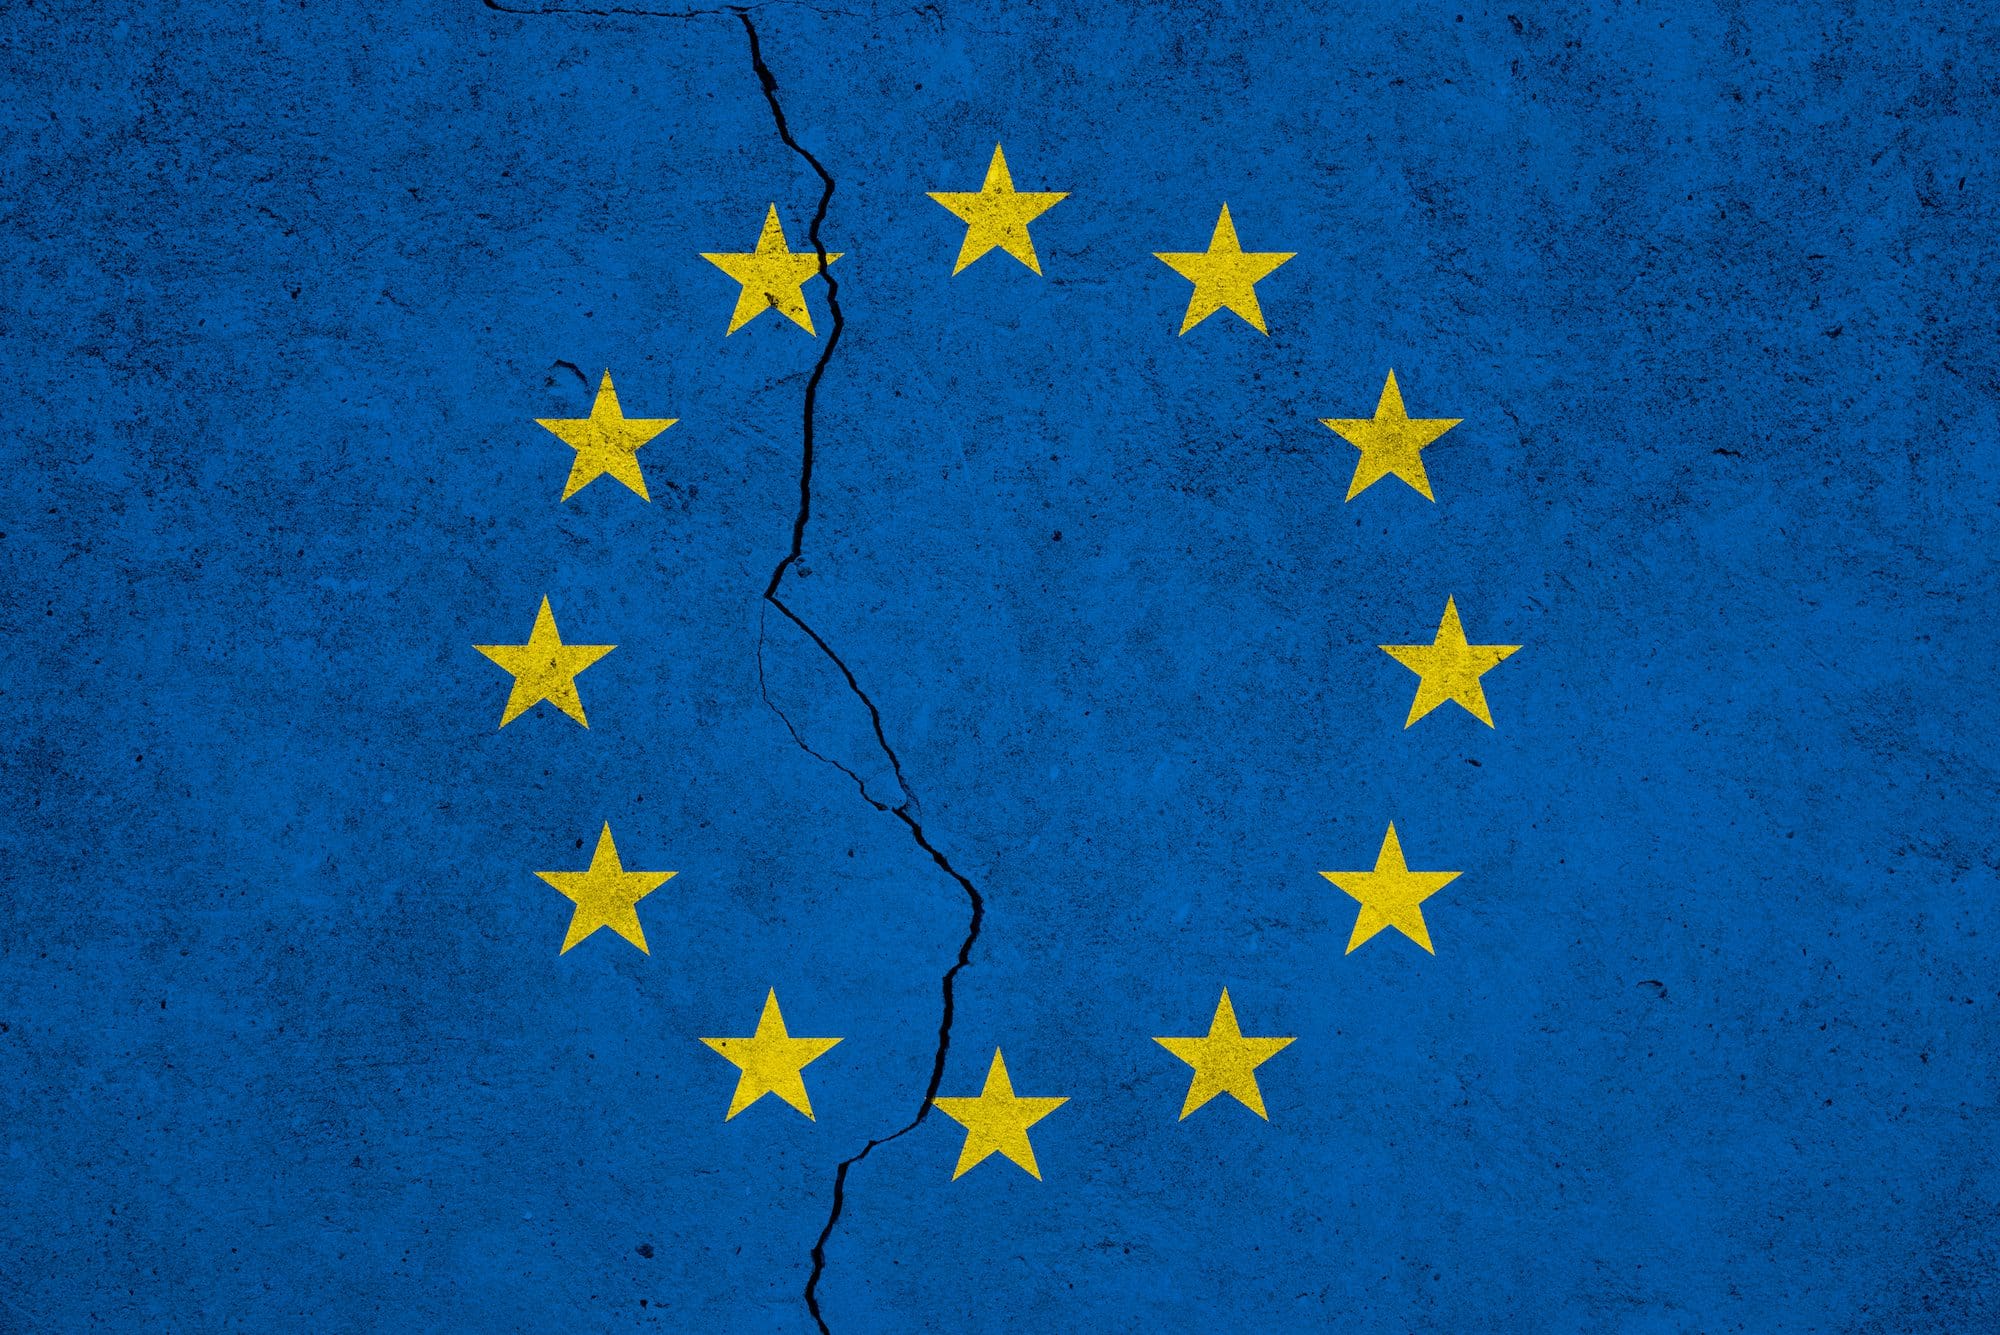 Das Europa der Zukunft muss so sein oder wird nicht (mehr) sein